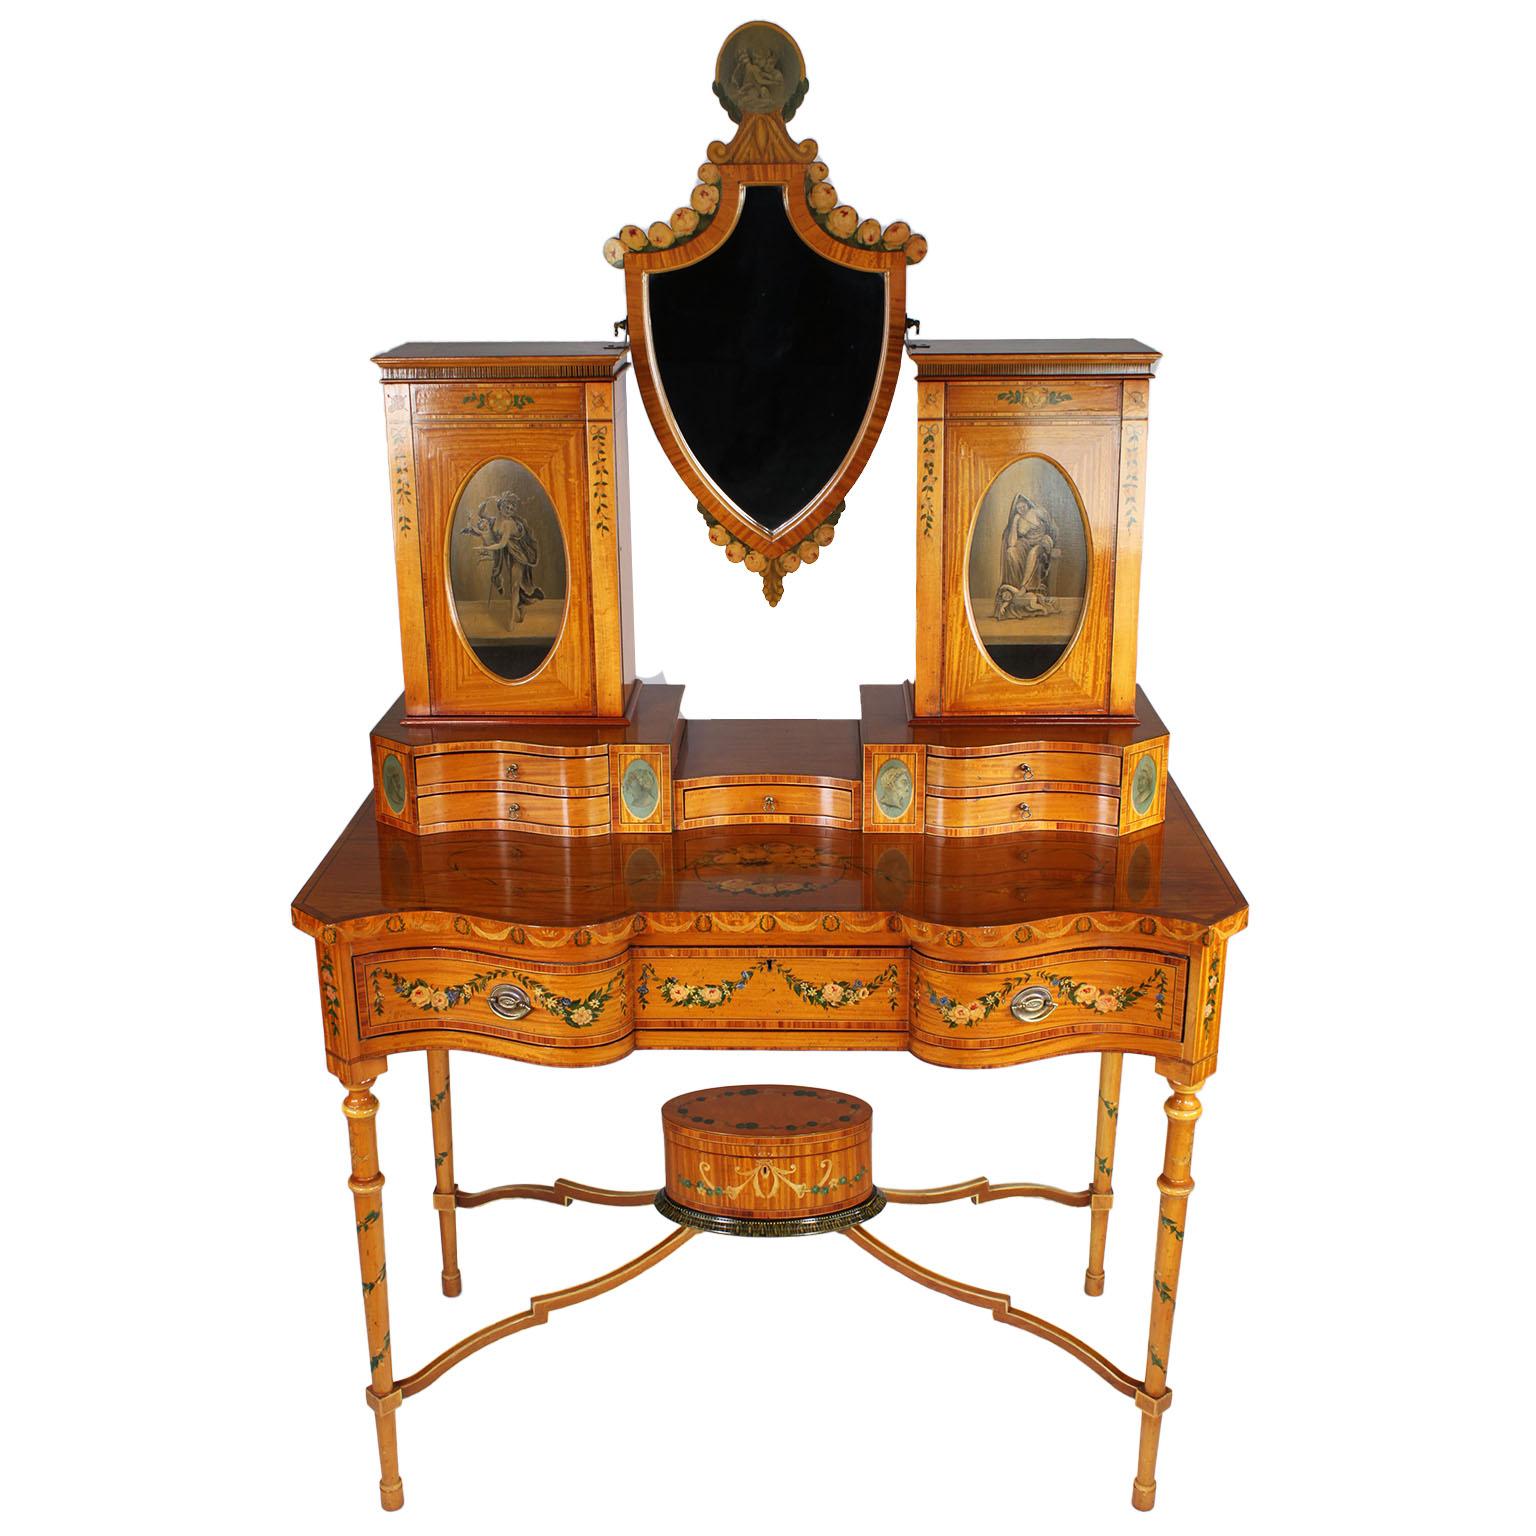 Eine sehr schöne englische 19. Jahrhundert Adam-Stil Polychrome gemalt Satinholz Eitelkeit Tisch. Die kunstvoll verzierten Schrank mit einer Staffelei Spiegel flankiert von einem Paar von Ablagefächern mit ovalen Gemälden zentriert, die alle über